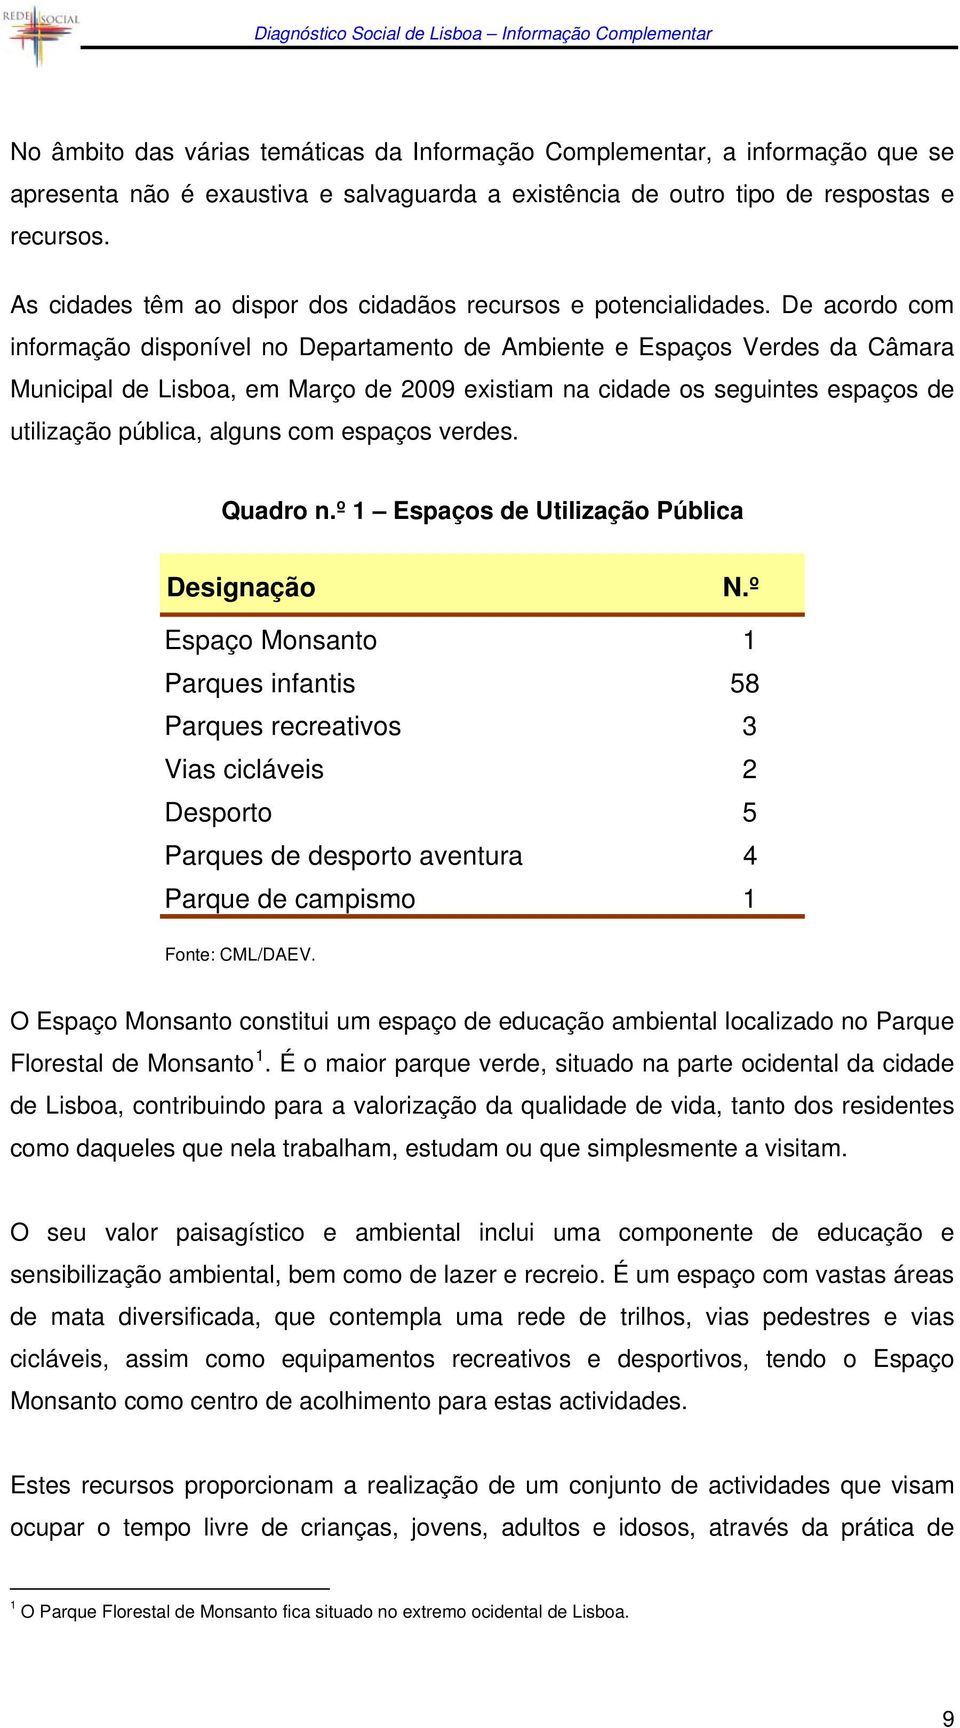 De acordo com informação disponível no Departamento de Ambiente e Espaços Verdes da Câmara Municipal de Lisboa, em Março de 2009 existiam na cidade os seguintes espaços de utilização pública, alguns